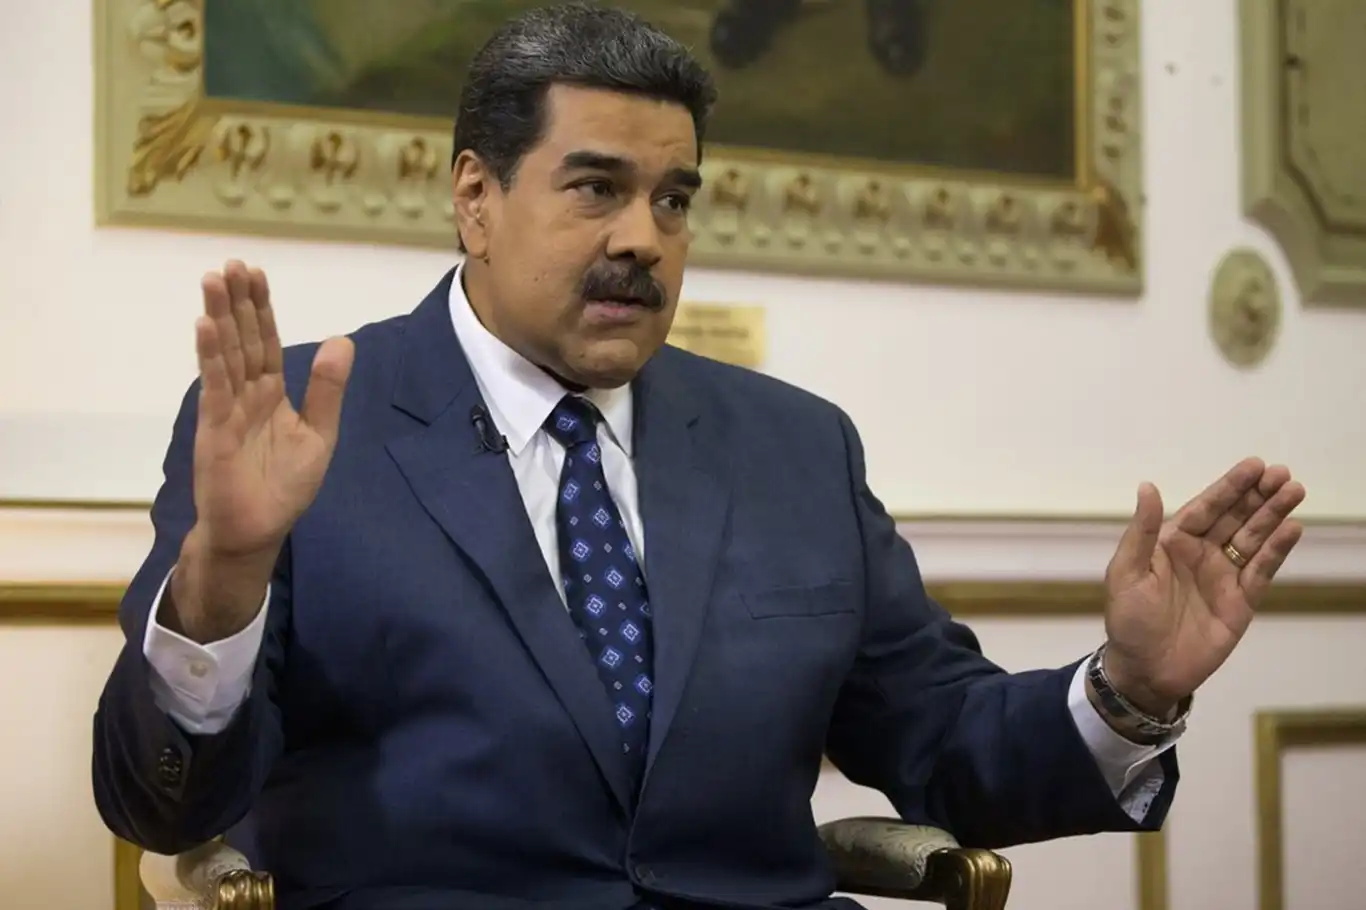 Maduro, Venezuela'daki başkanlık seçimlerine müdahale edilmemesi çağrısında bulundu